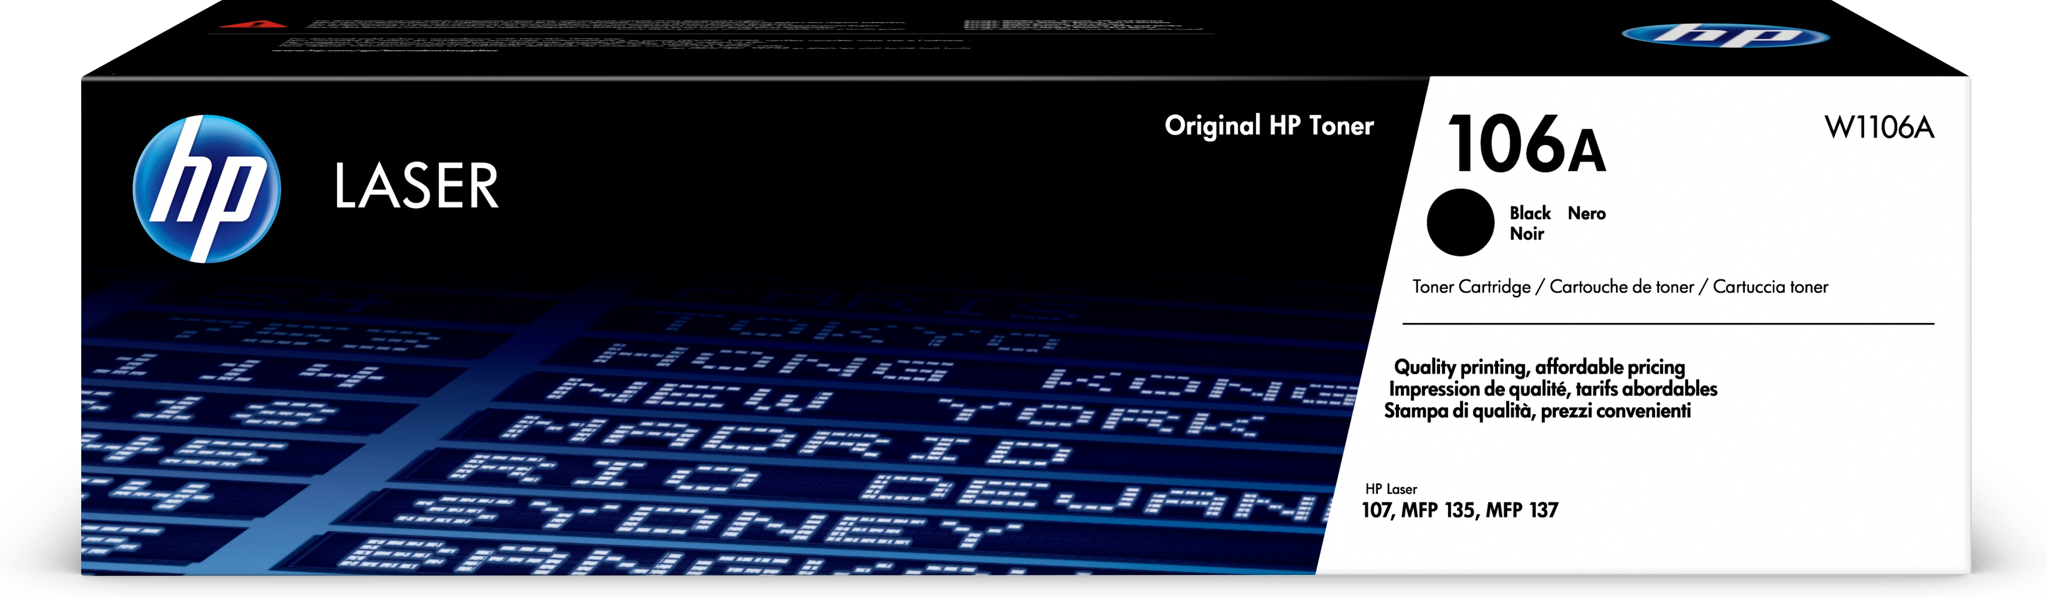 Bild von HP 106A Schwarz Original Laser Tonerkartusche - 1000 Seiten - Schwarz - 1 Stück(e)